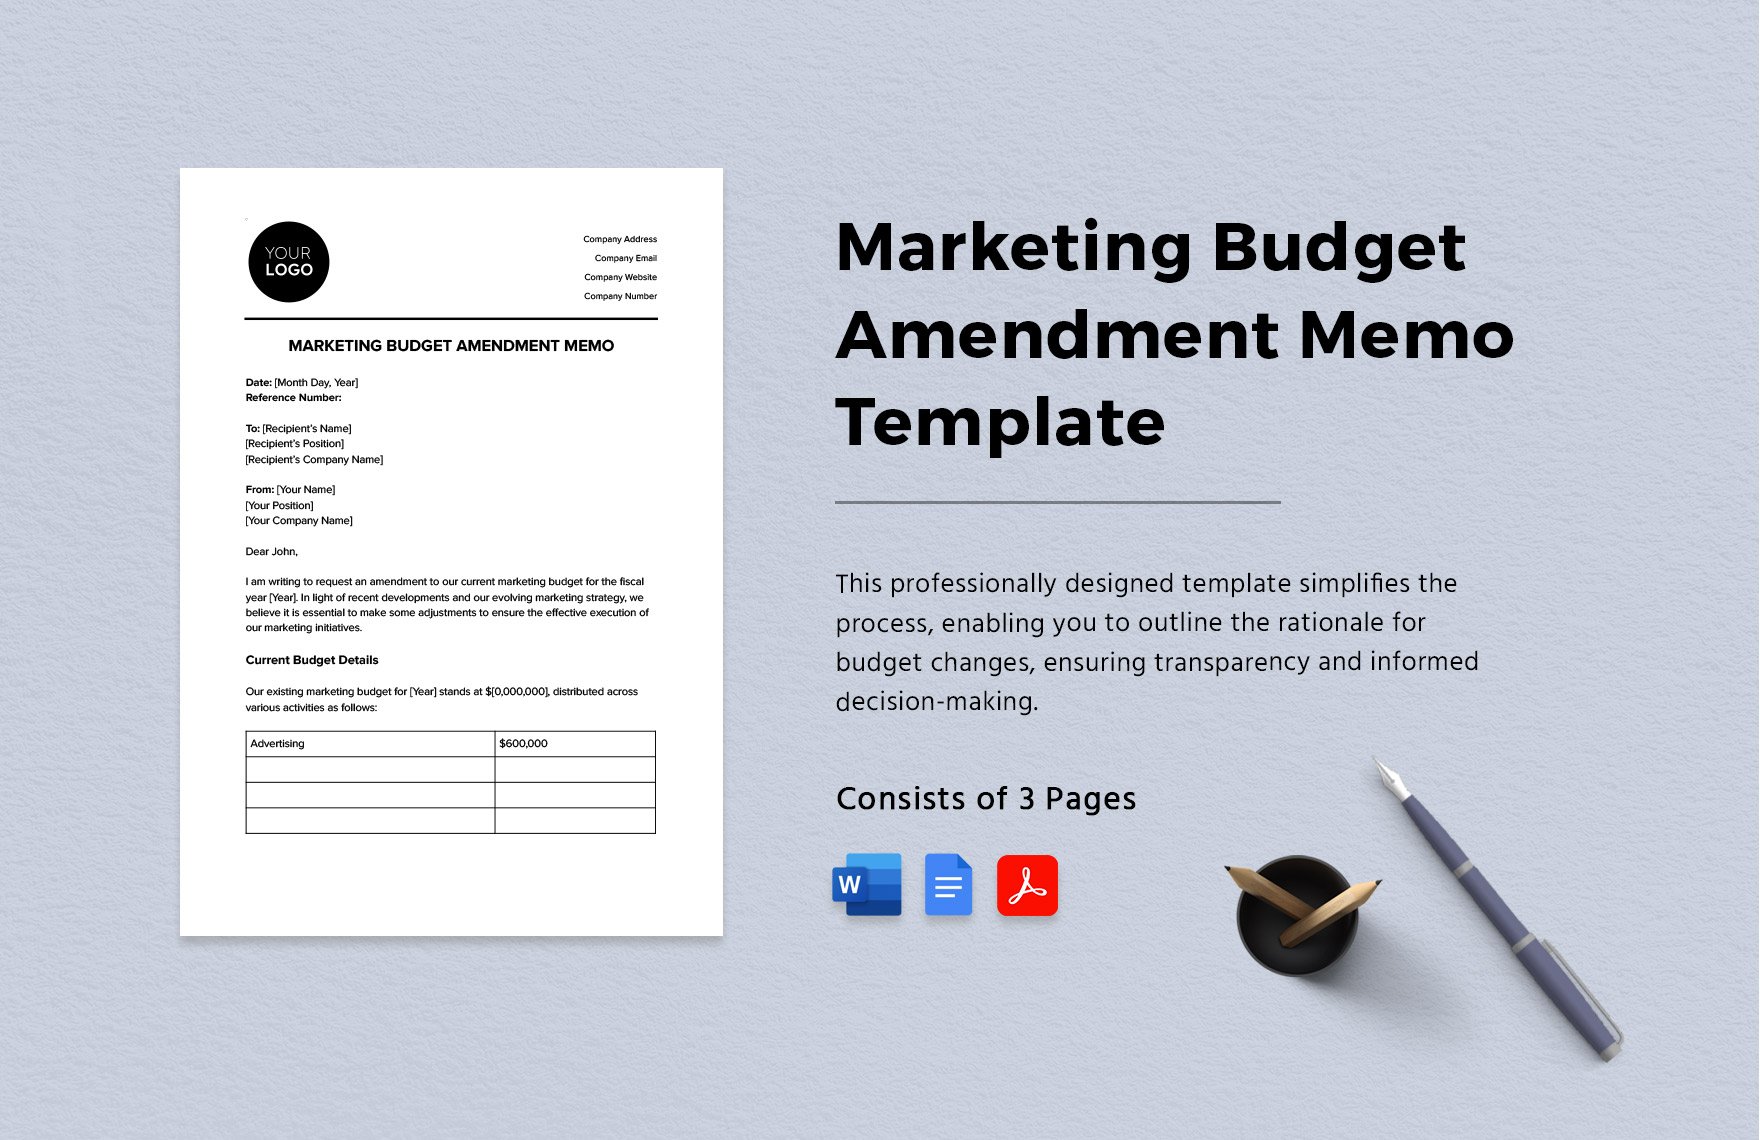 Marketing Budget Amendment Memo Template